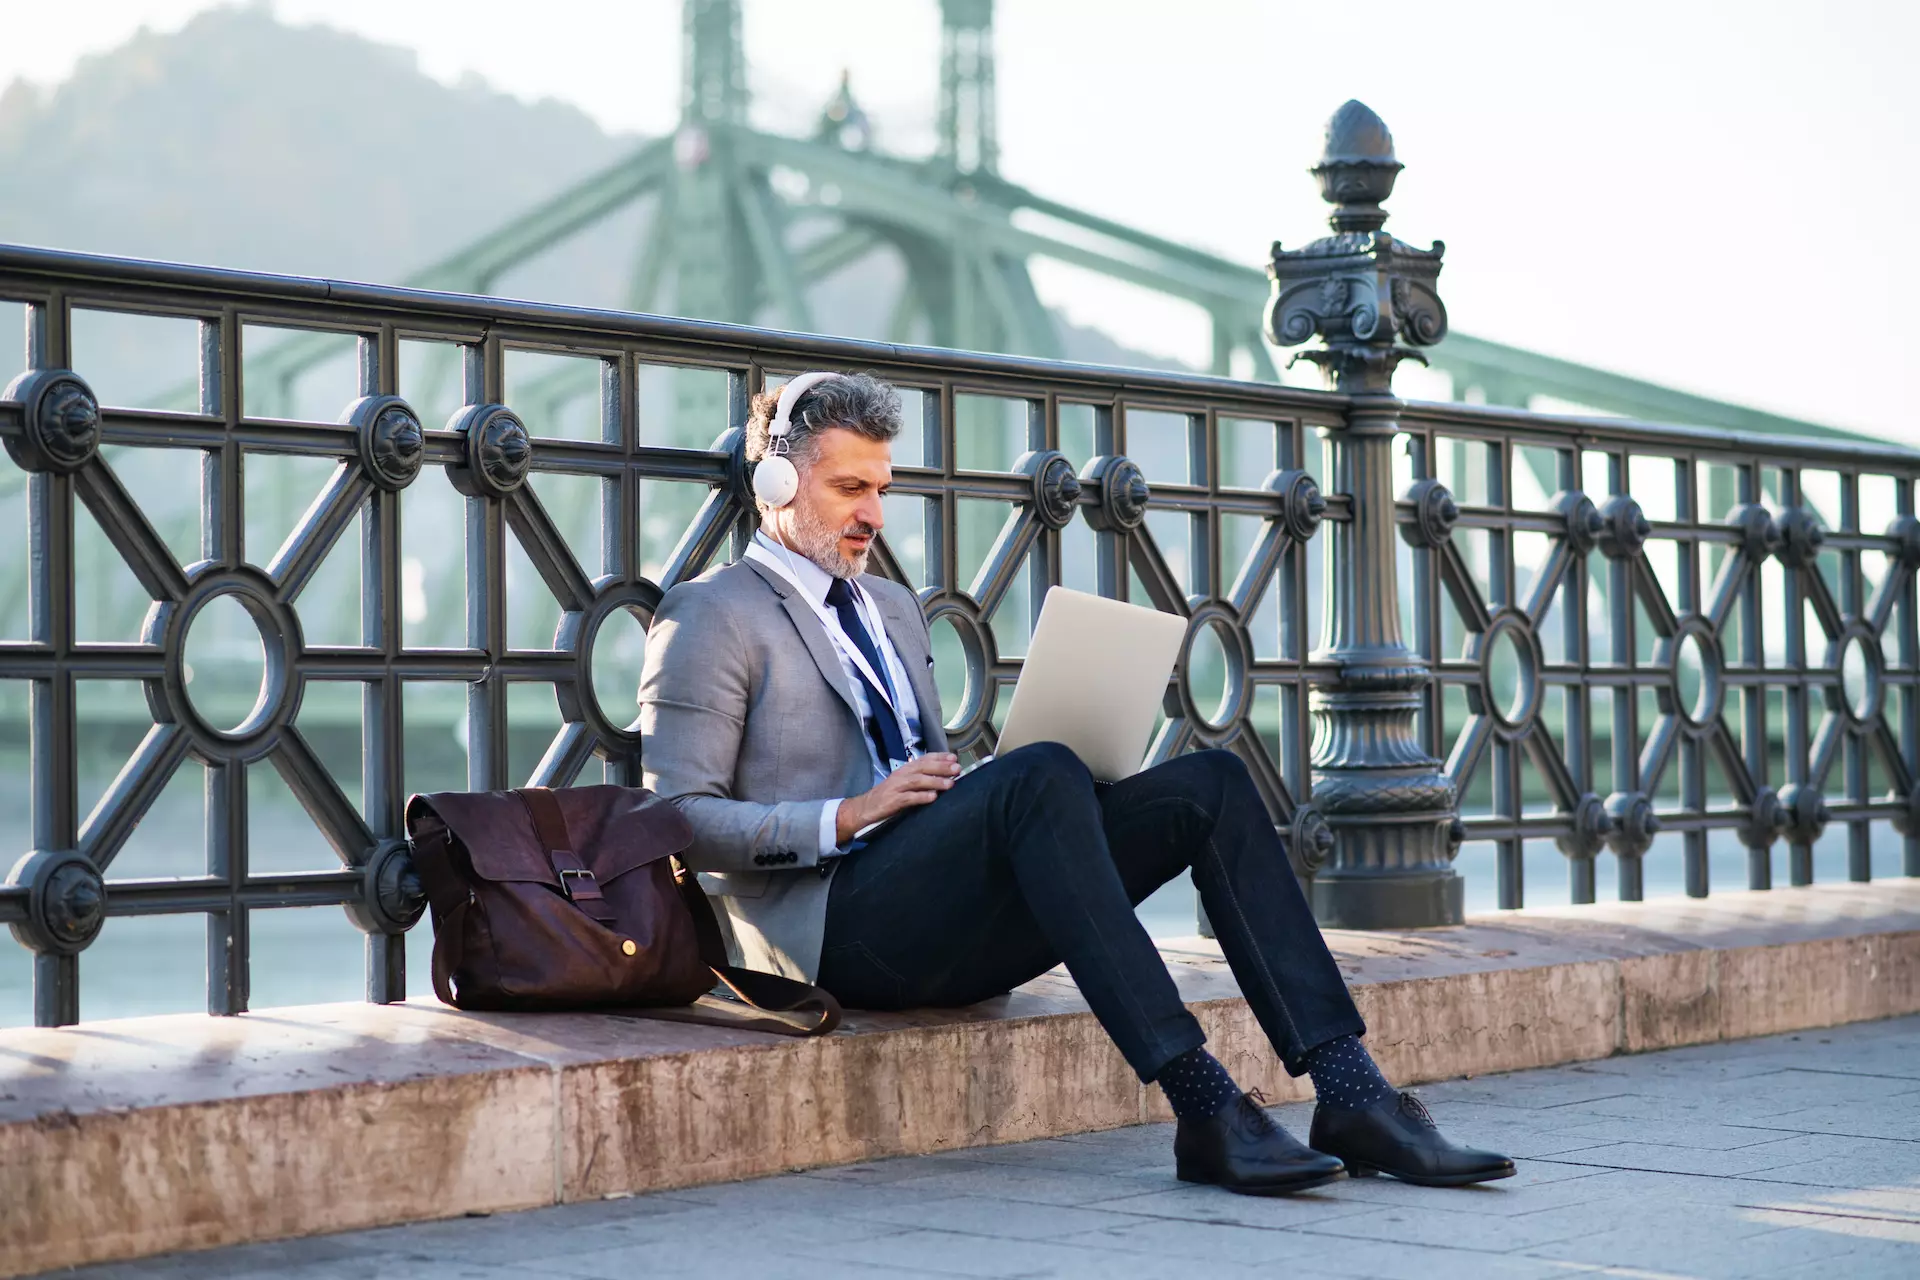 Gražus brandus verslininkas su nešiojamuoju kompiuteriu mieste. Vyras sėdi ant tilto, naudoja nešiojamąjį kompiuterį ir ausines.